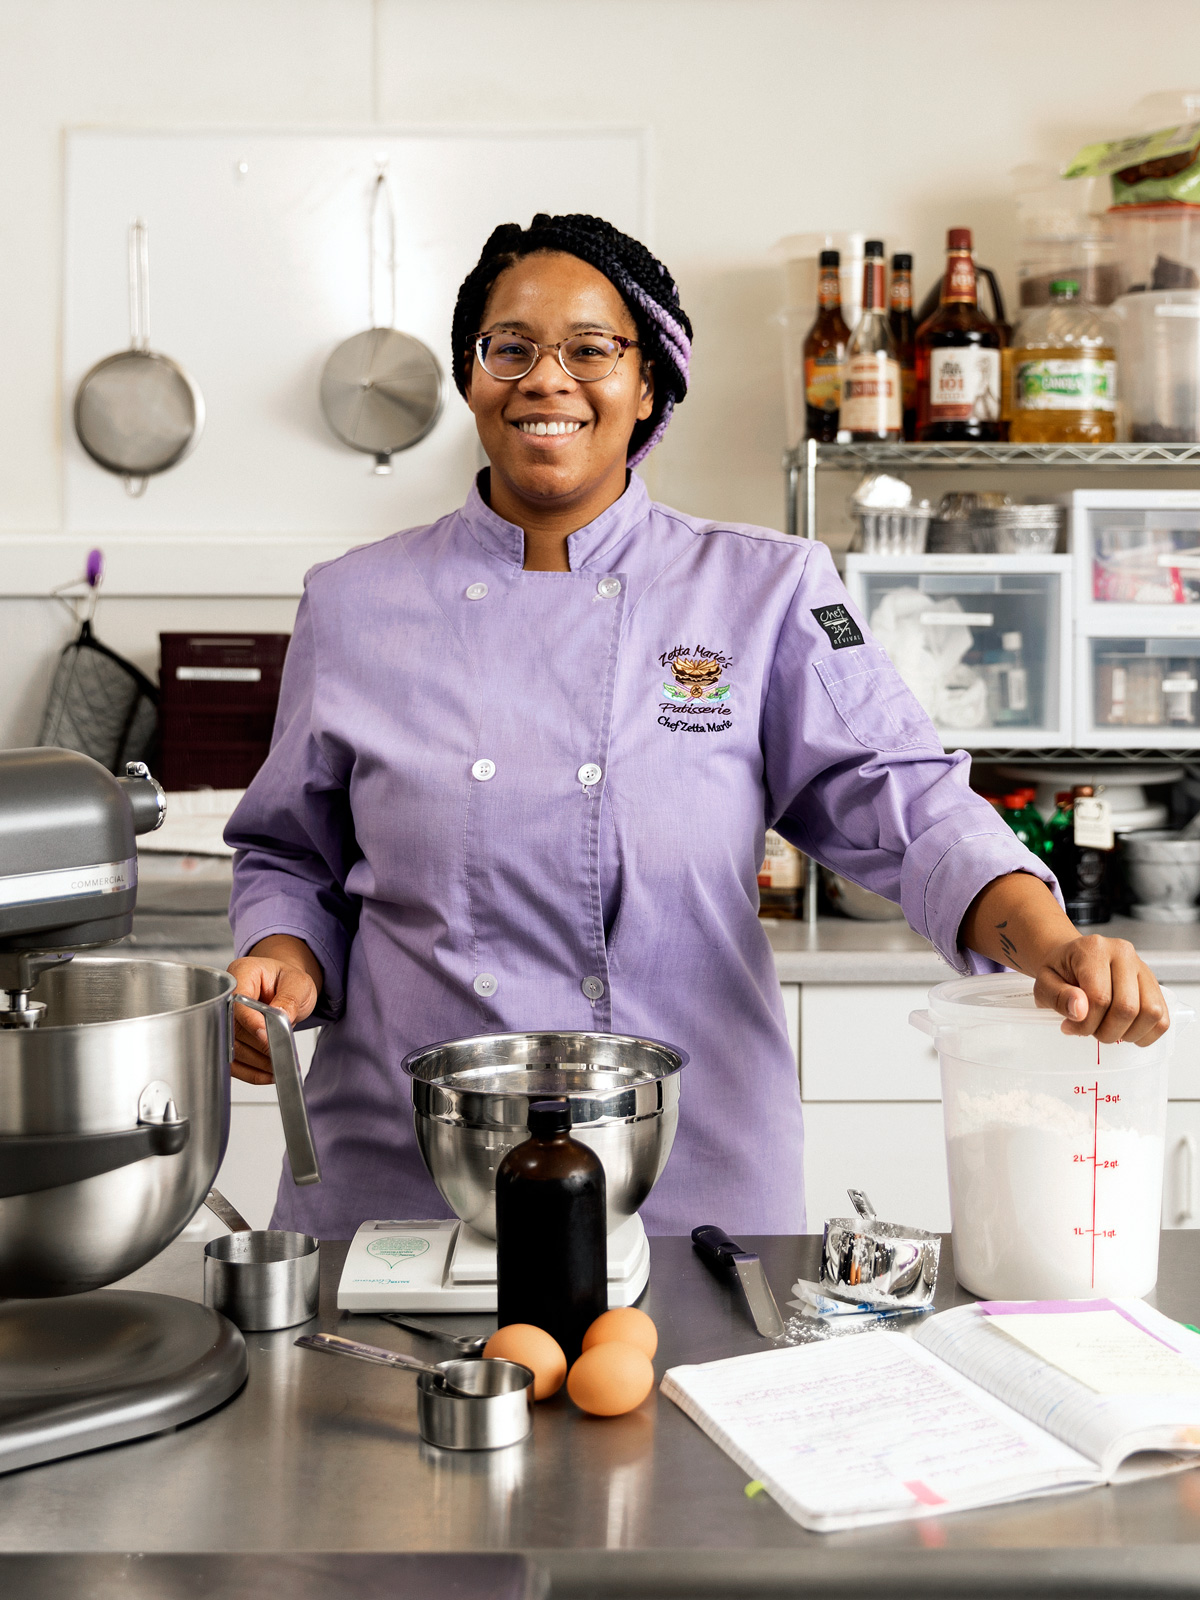 Una mujer con un abrigo de chefs de color púrpura claro en su panadería con la mano tendida en un recipiente de harina
